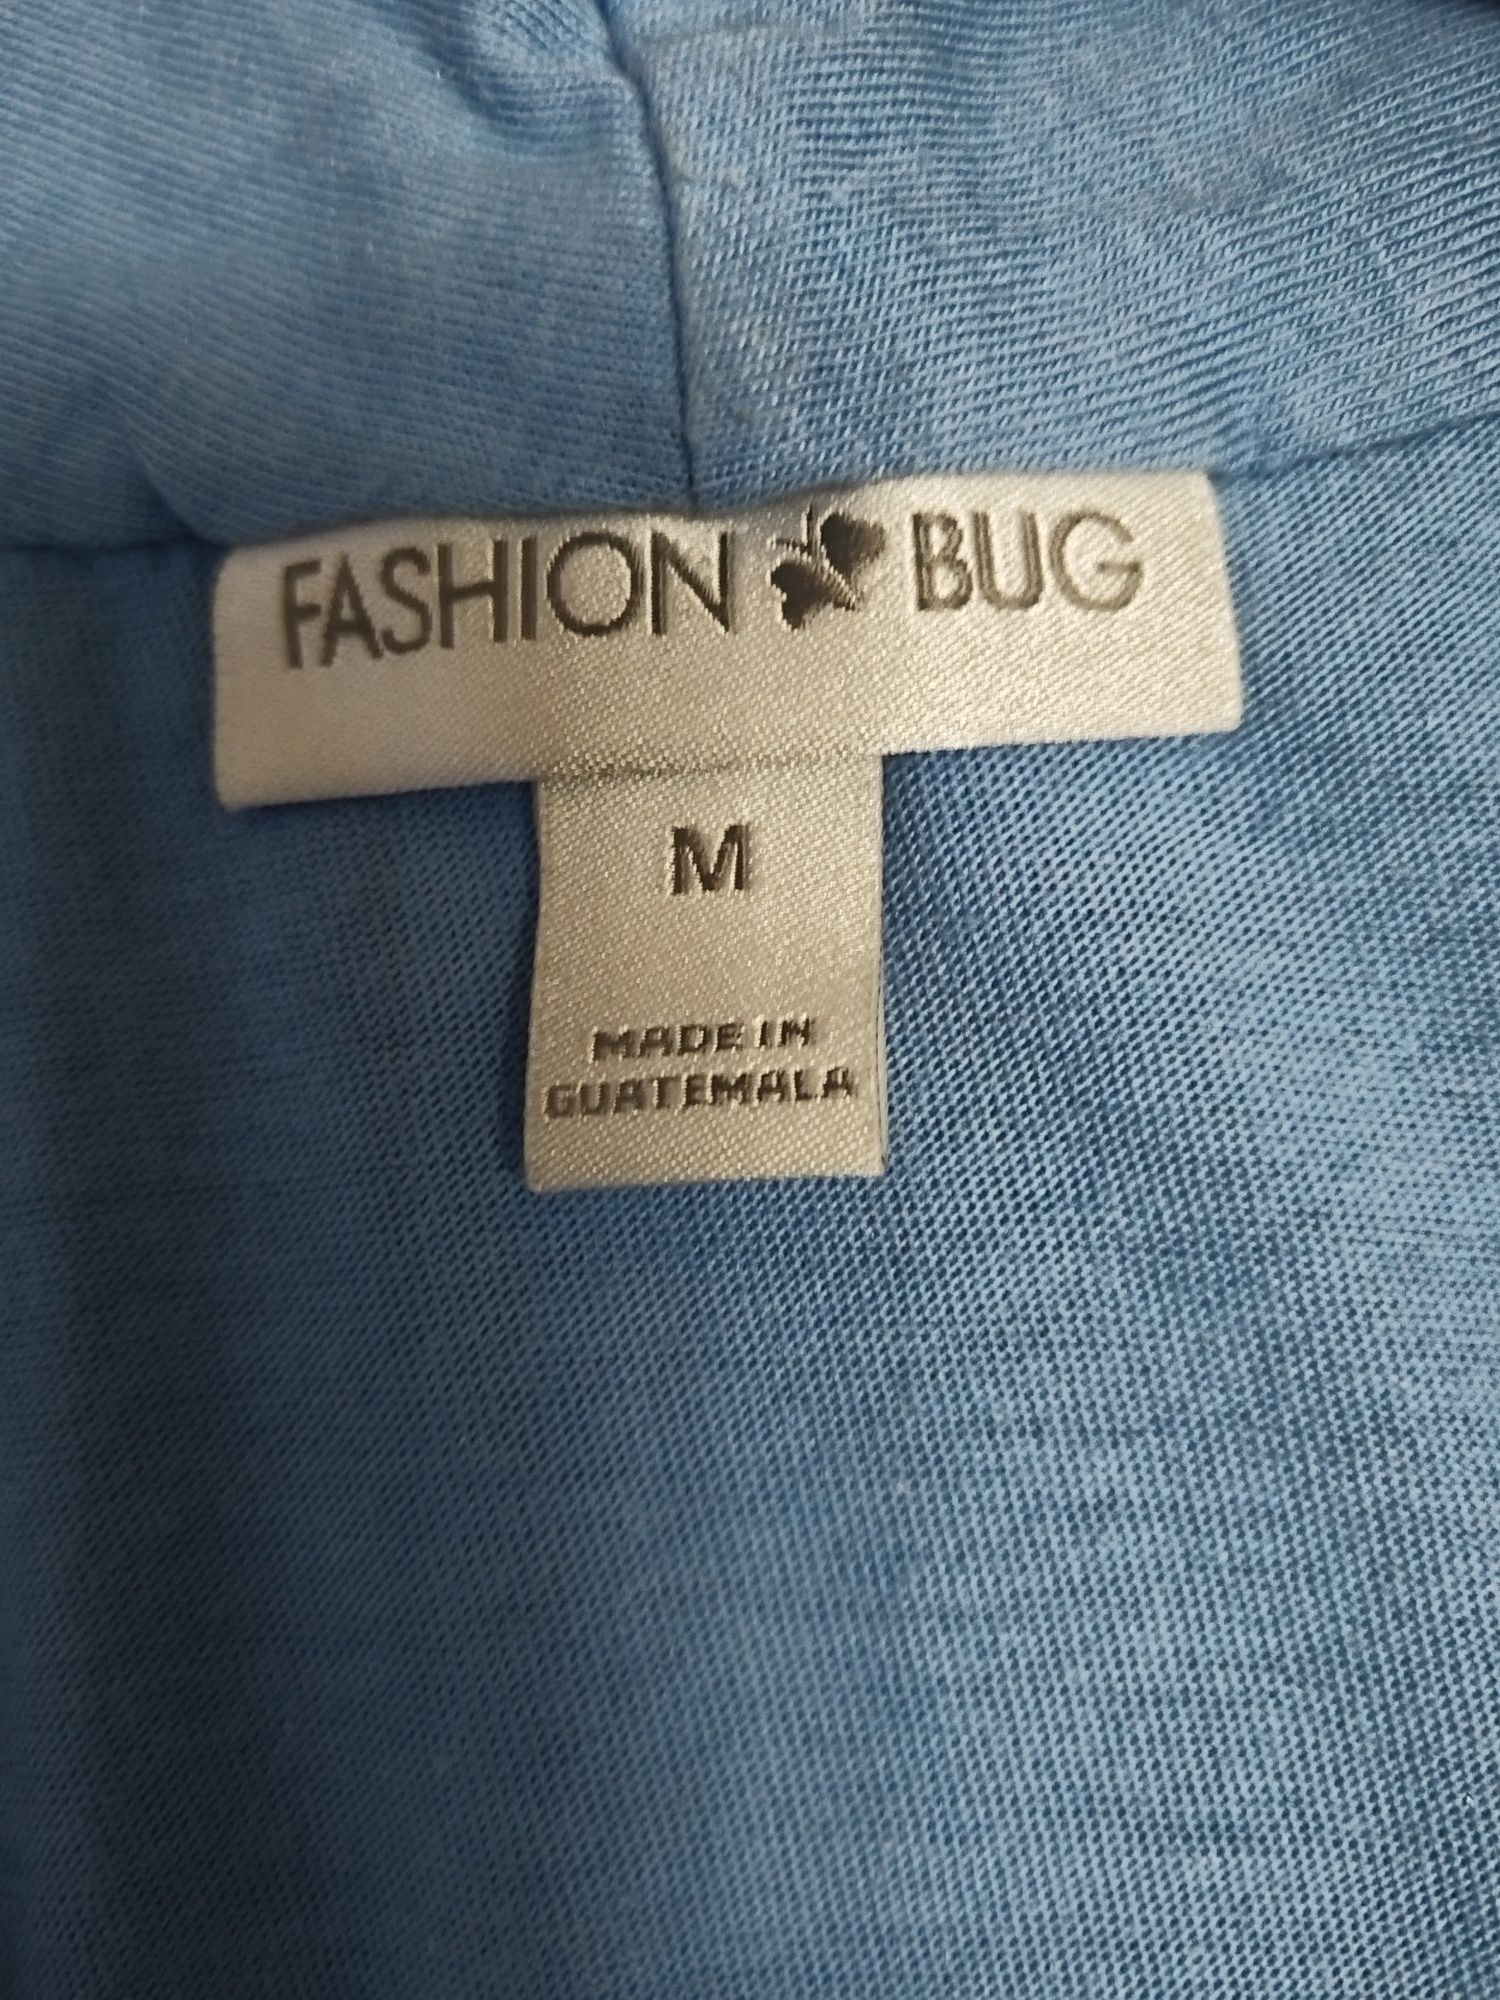 Bluzka damska rozmiar M firmy Fashion& Bug